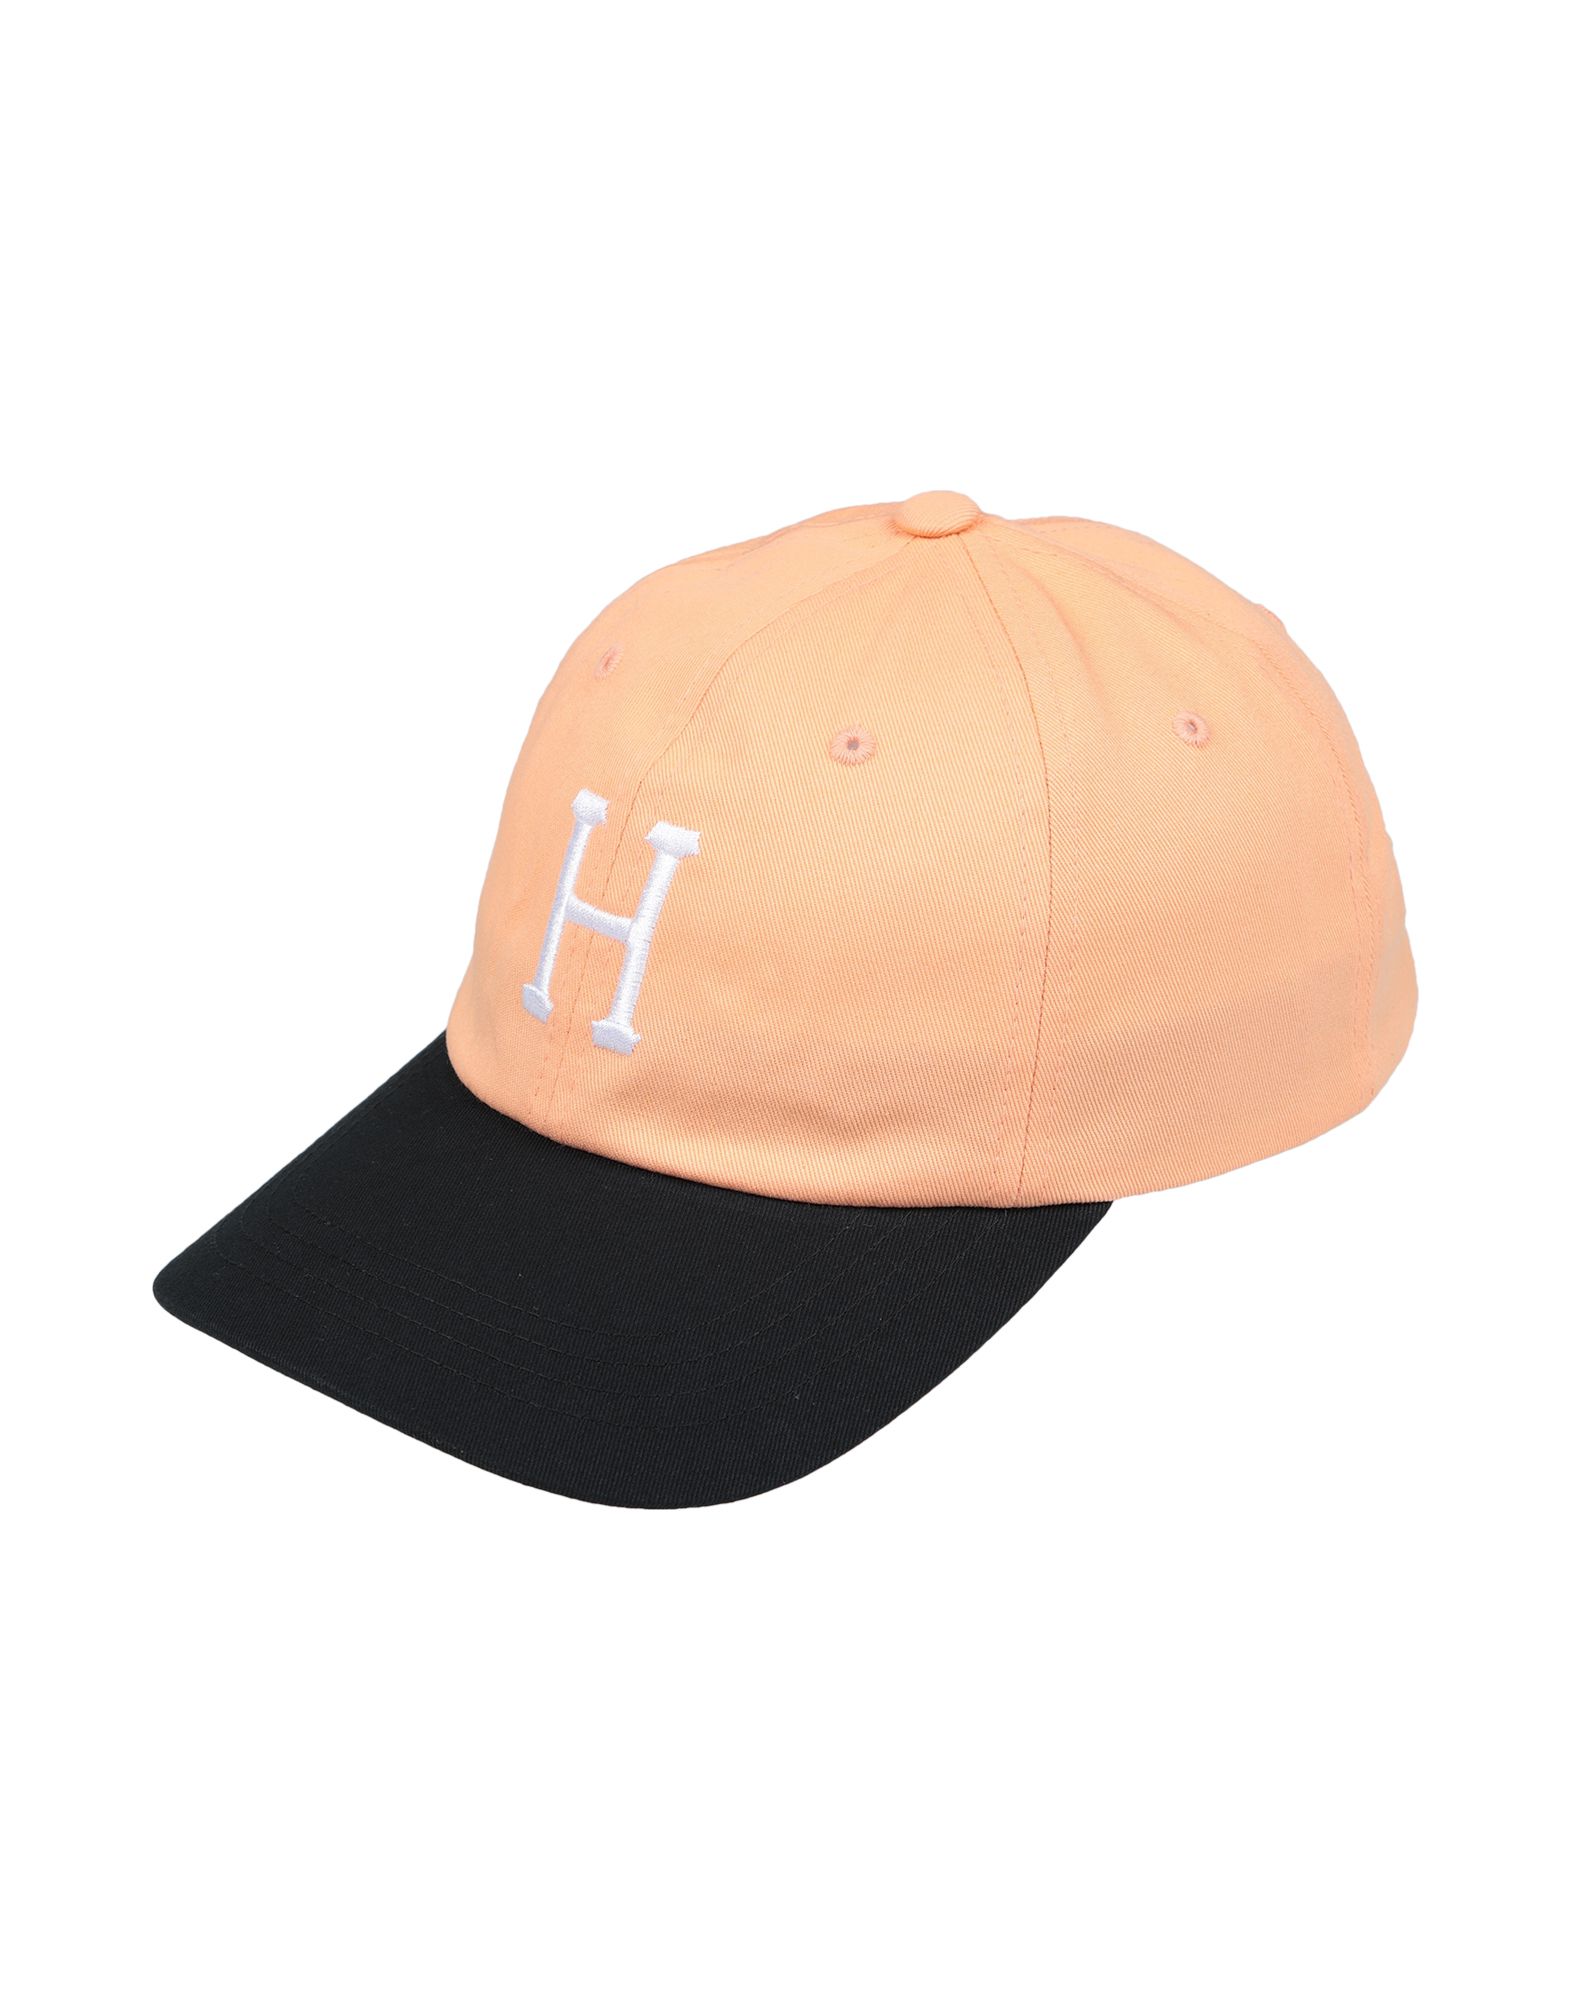 《送料無料》HUF メンズ 帽子 あんず色 one size コットン 100%